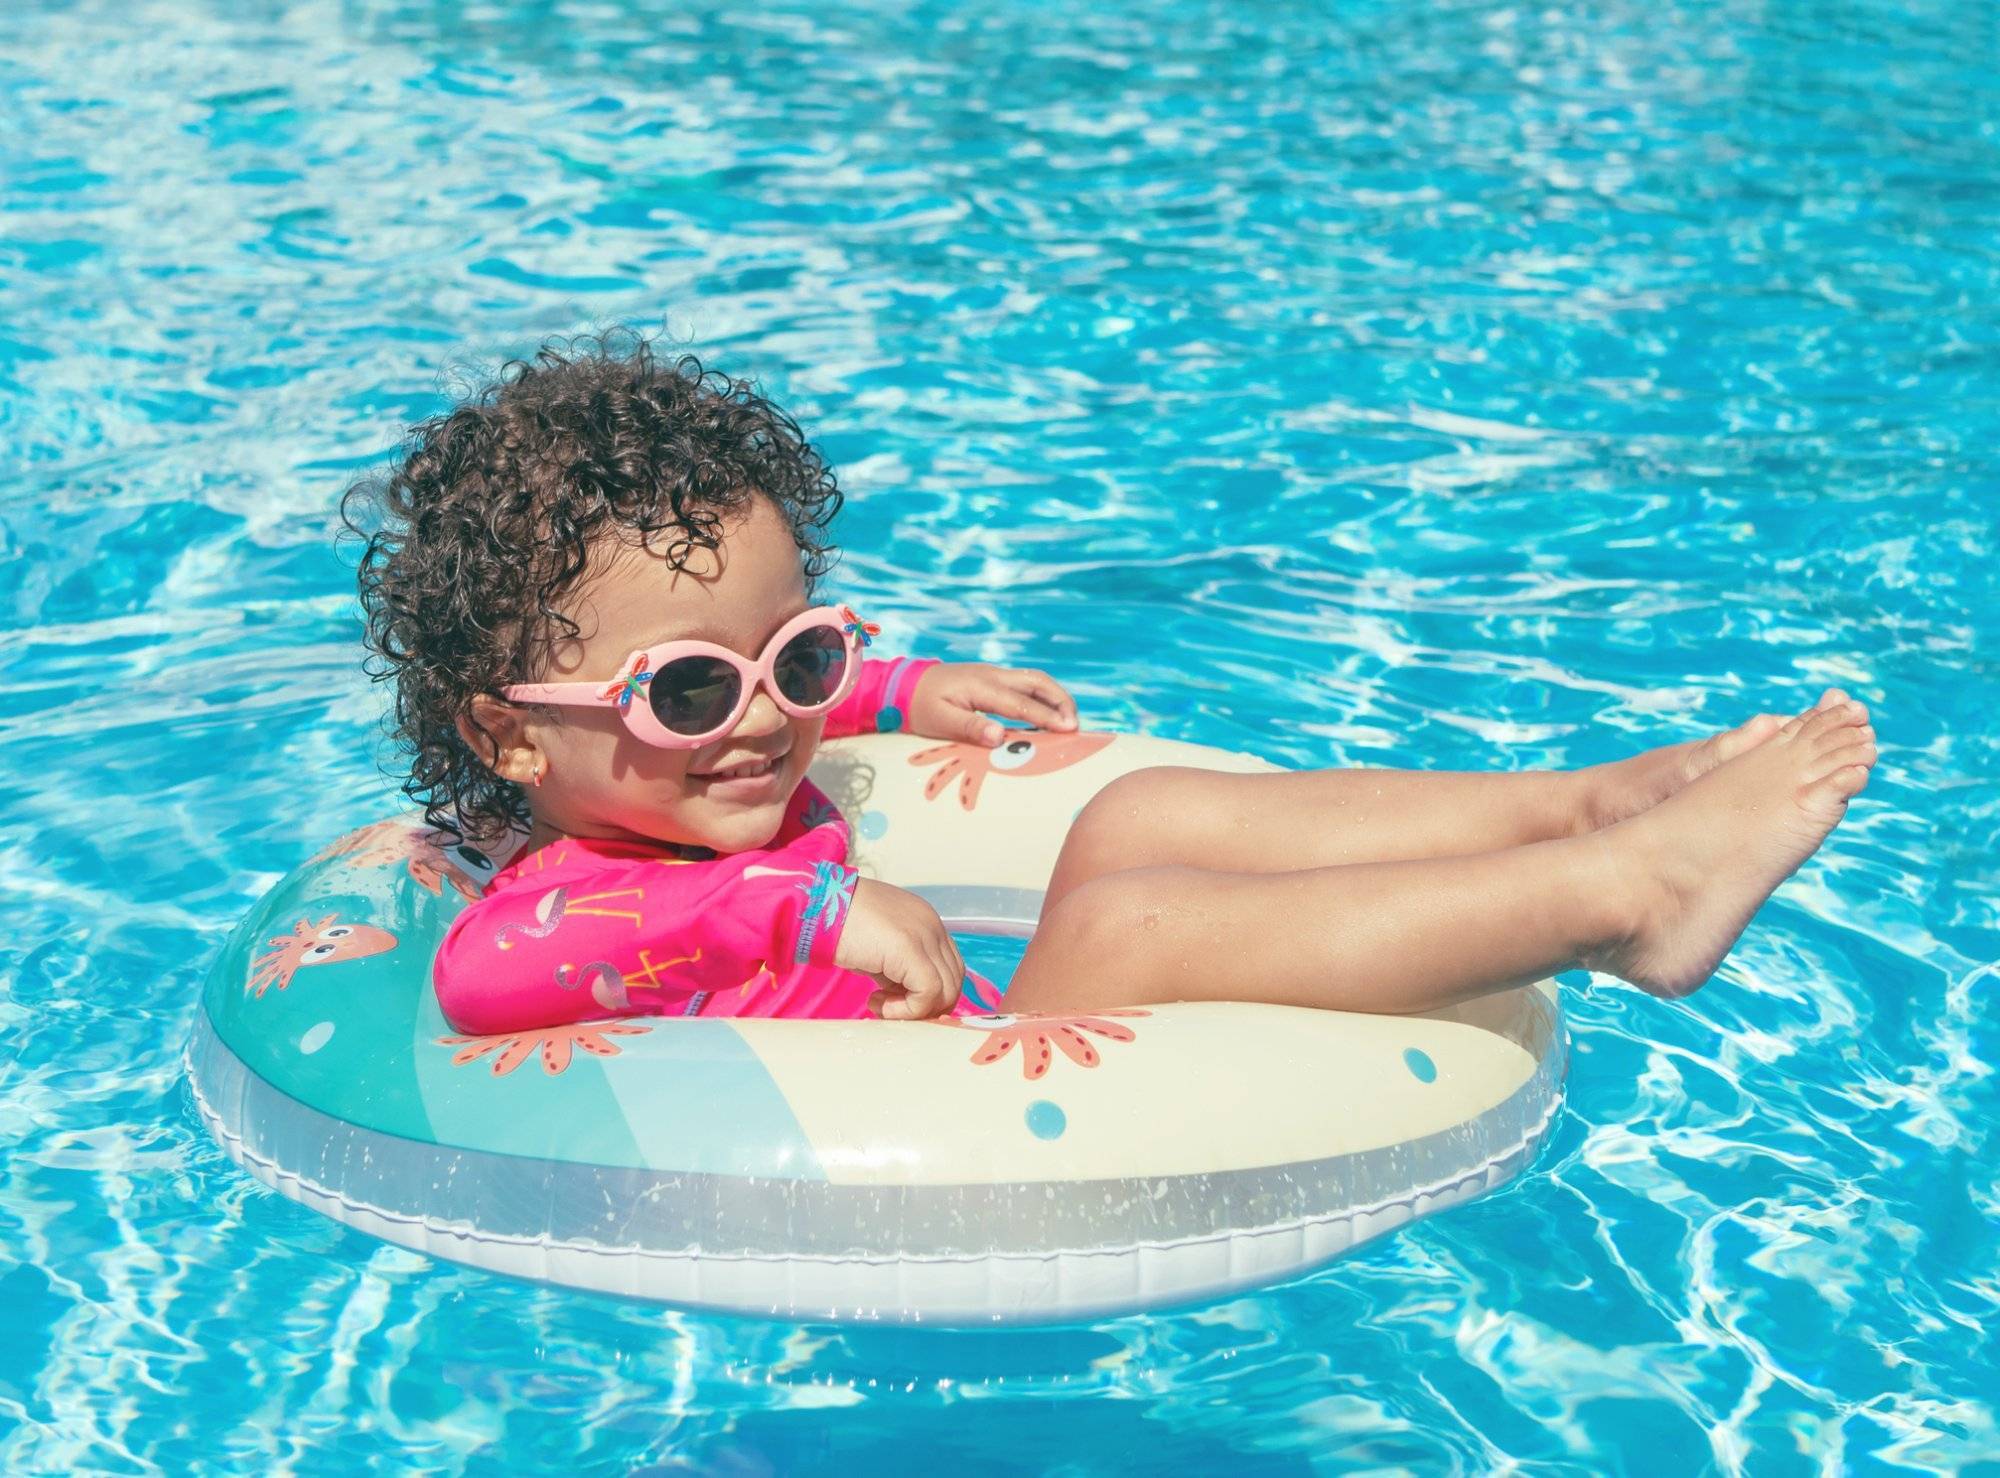 Little girl enjoys the pool